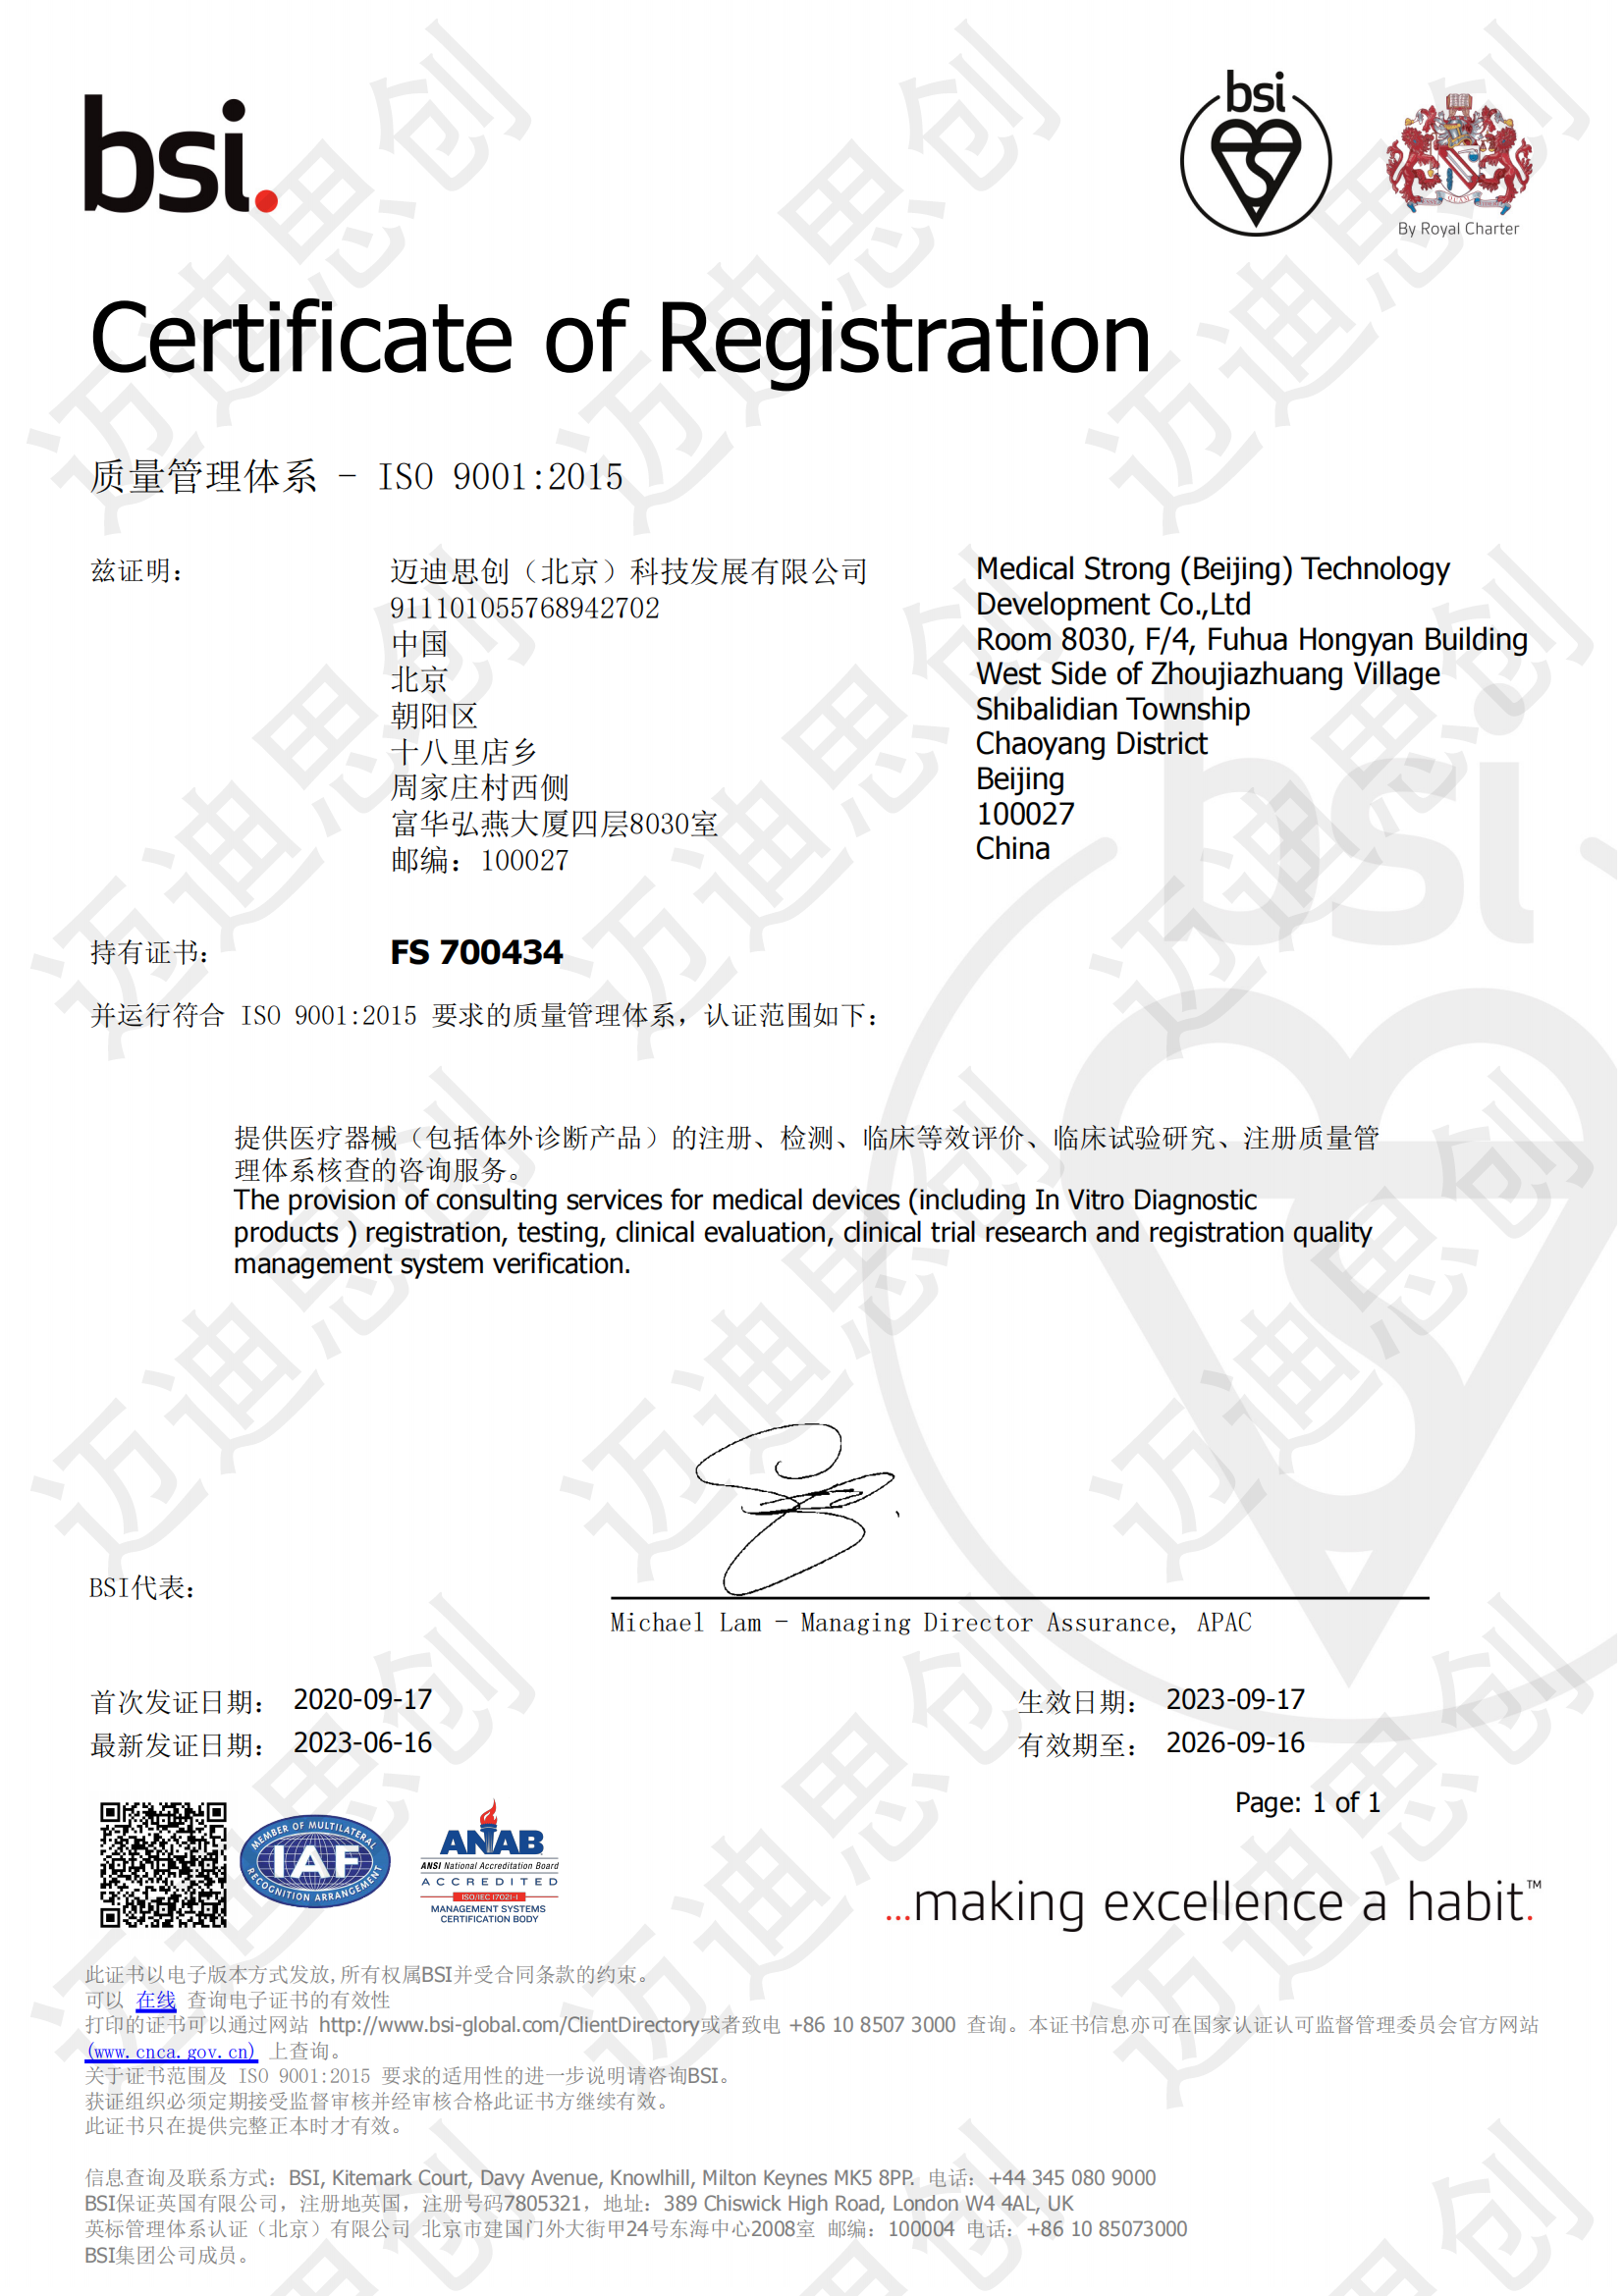 BSI认证证书FS 700434加水印.png